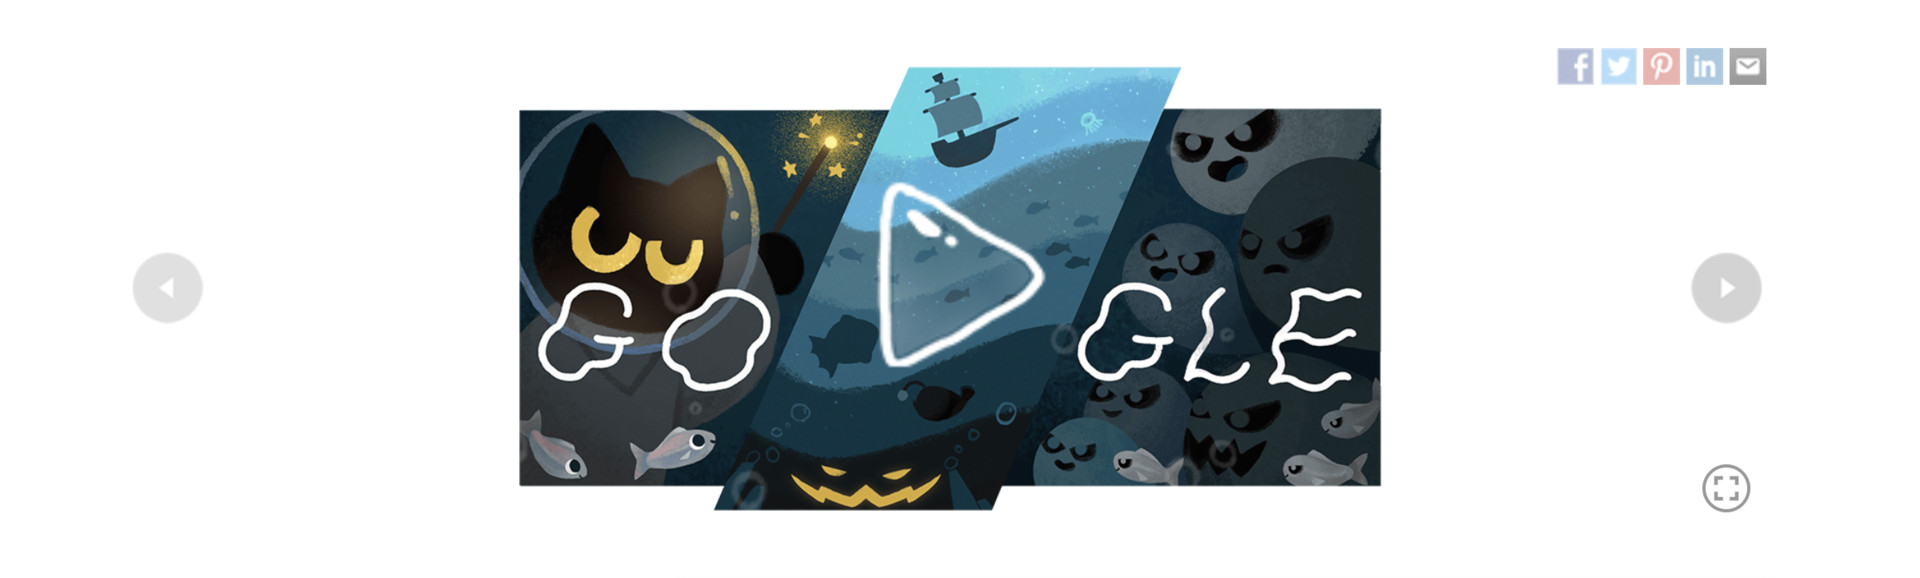 google doodle 2020 halloween